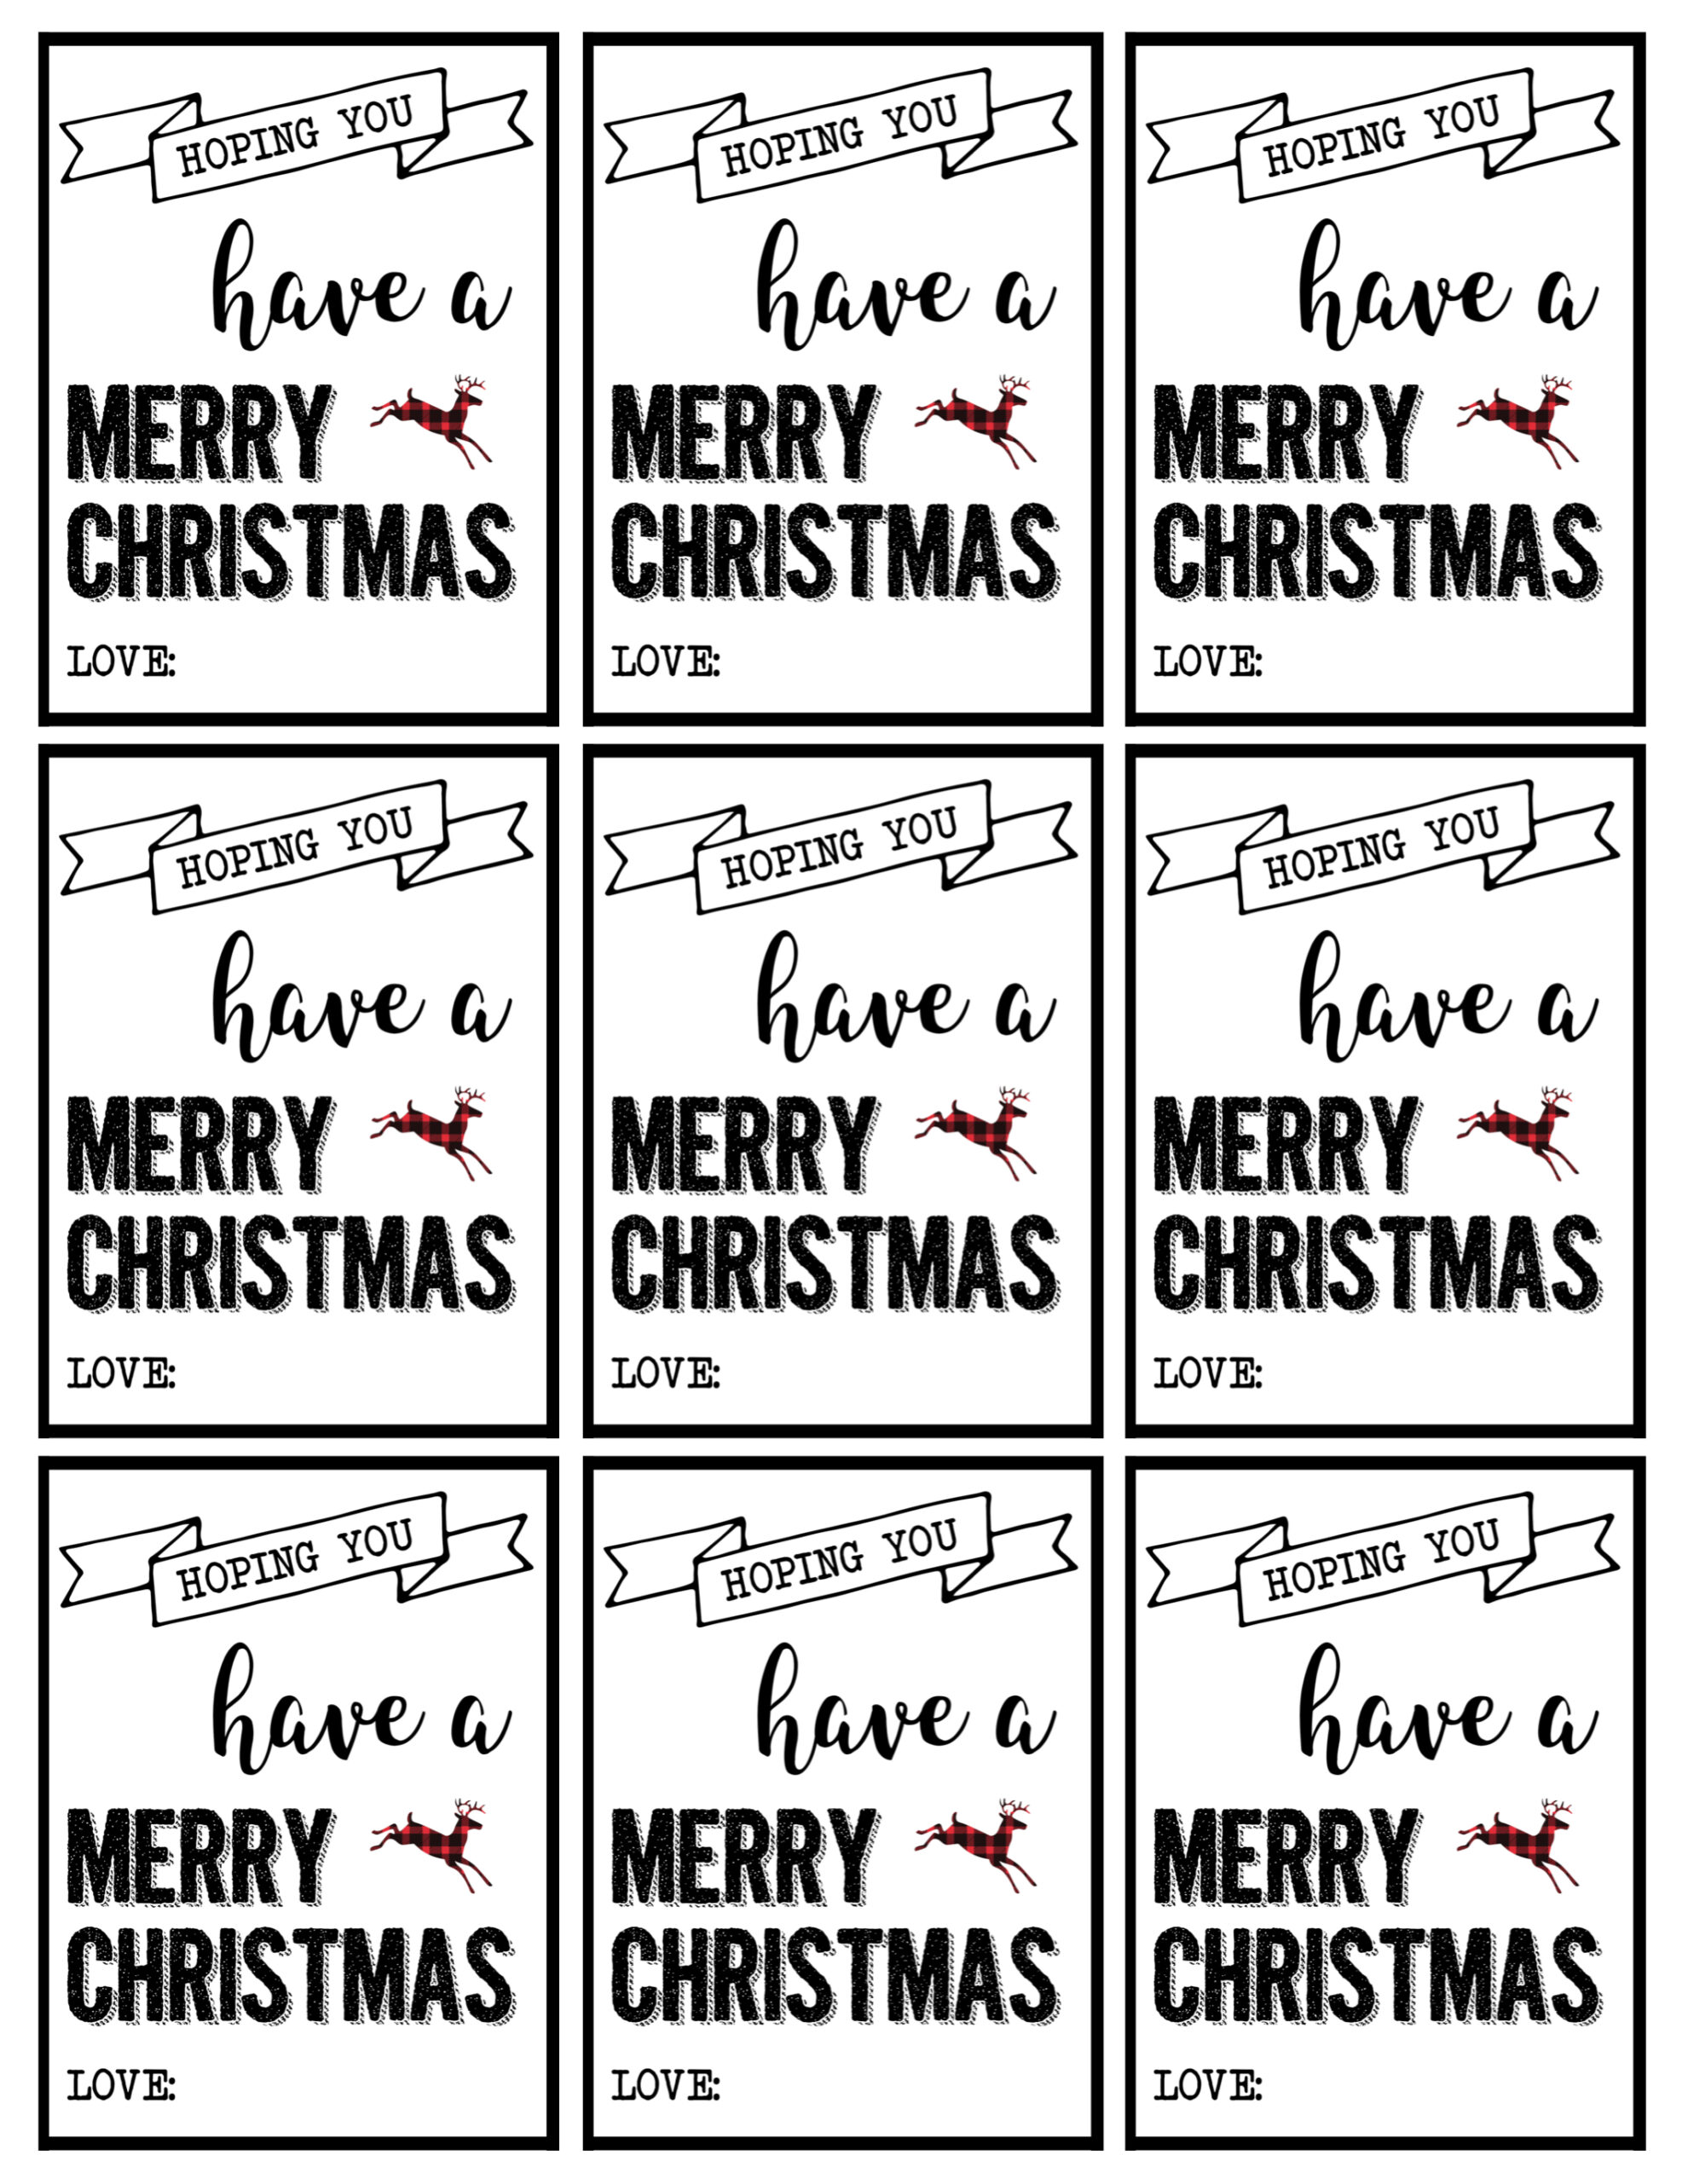 free-printable-christmas-gift-tags